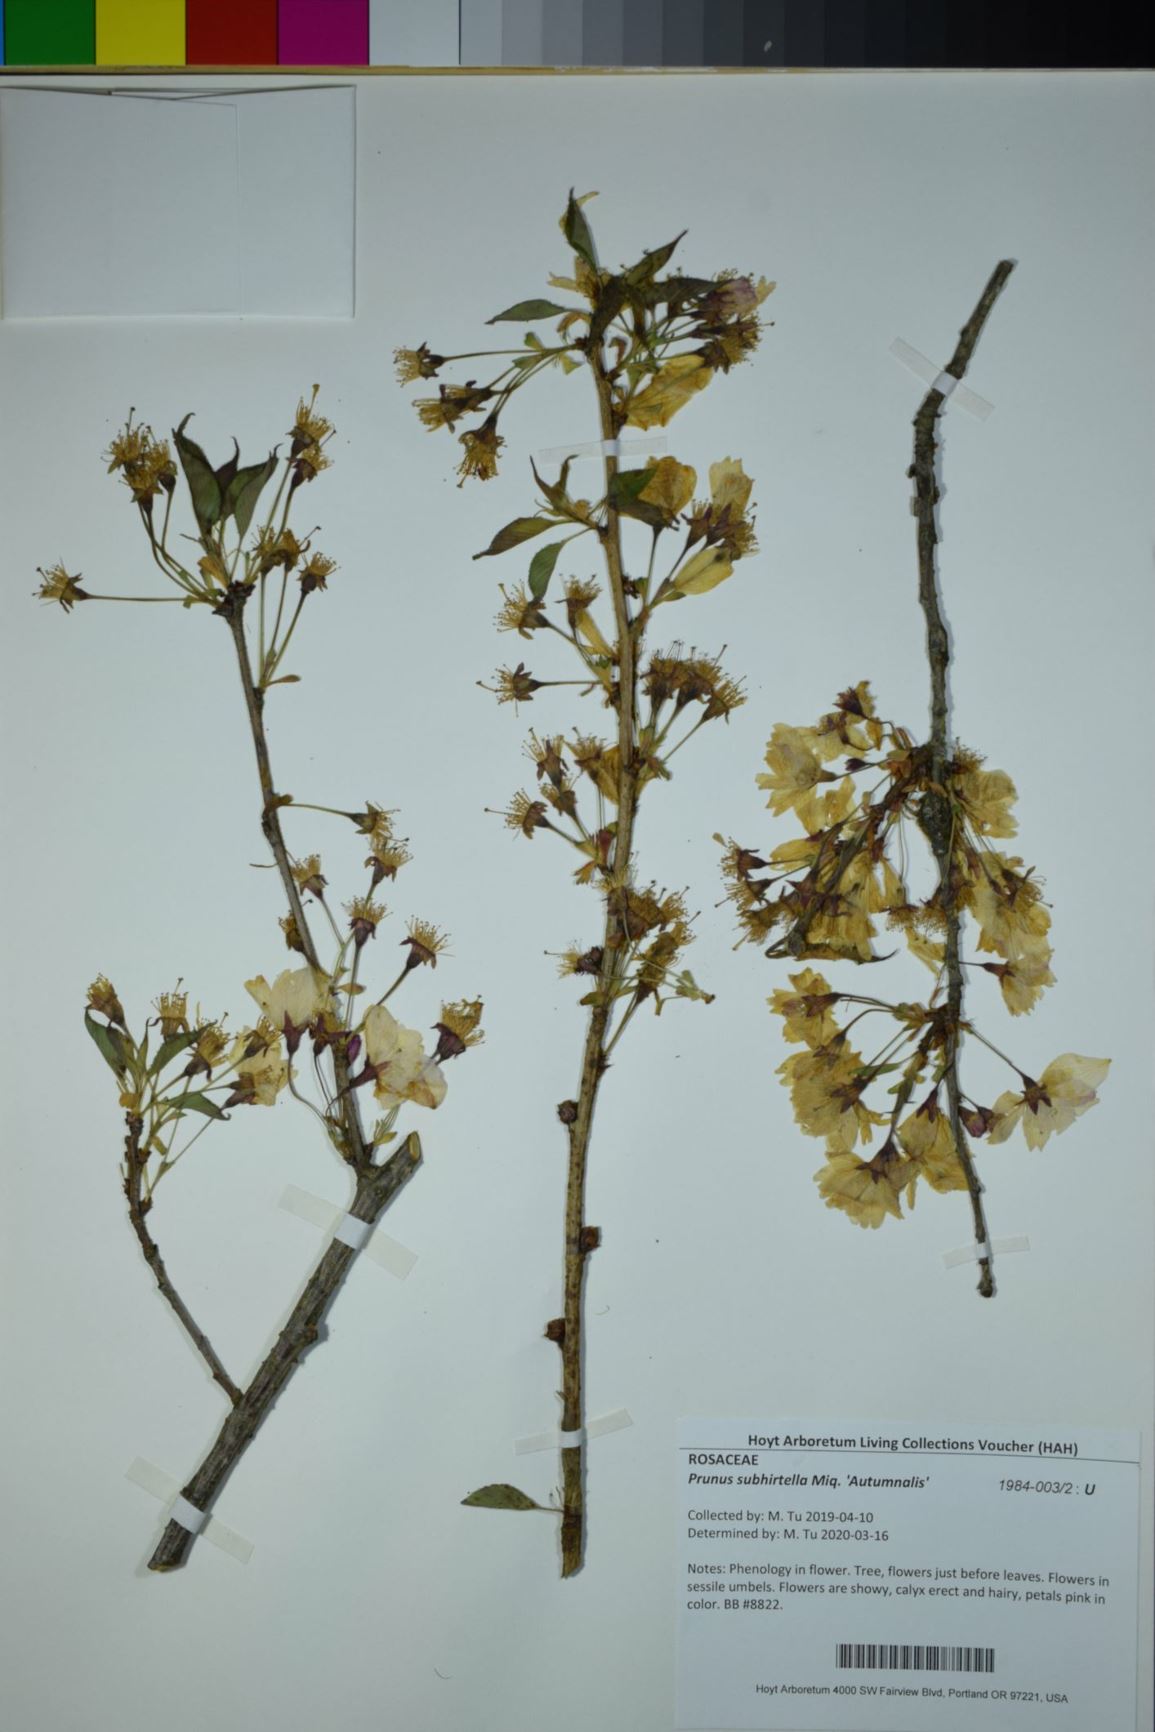 Prunus subhirtella 'Autumnalis' - Autumnalis Cherry